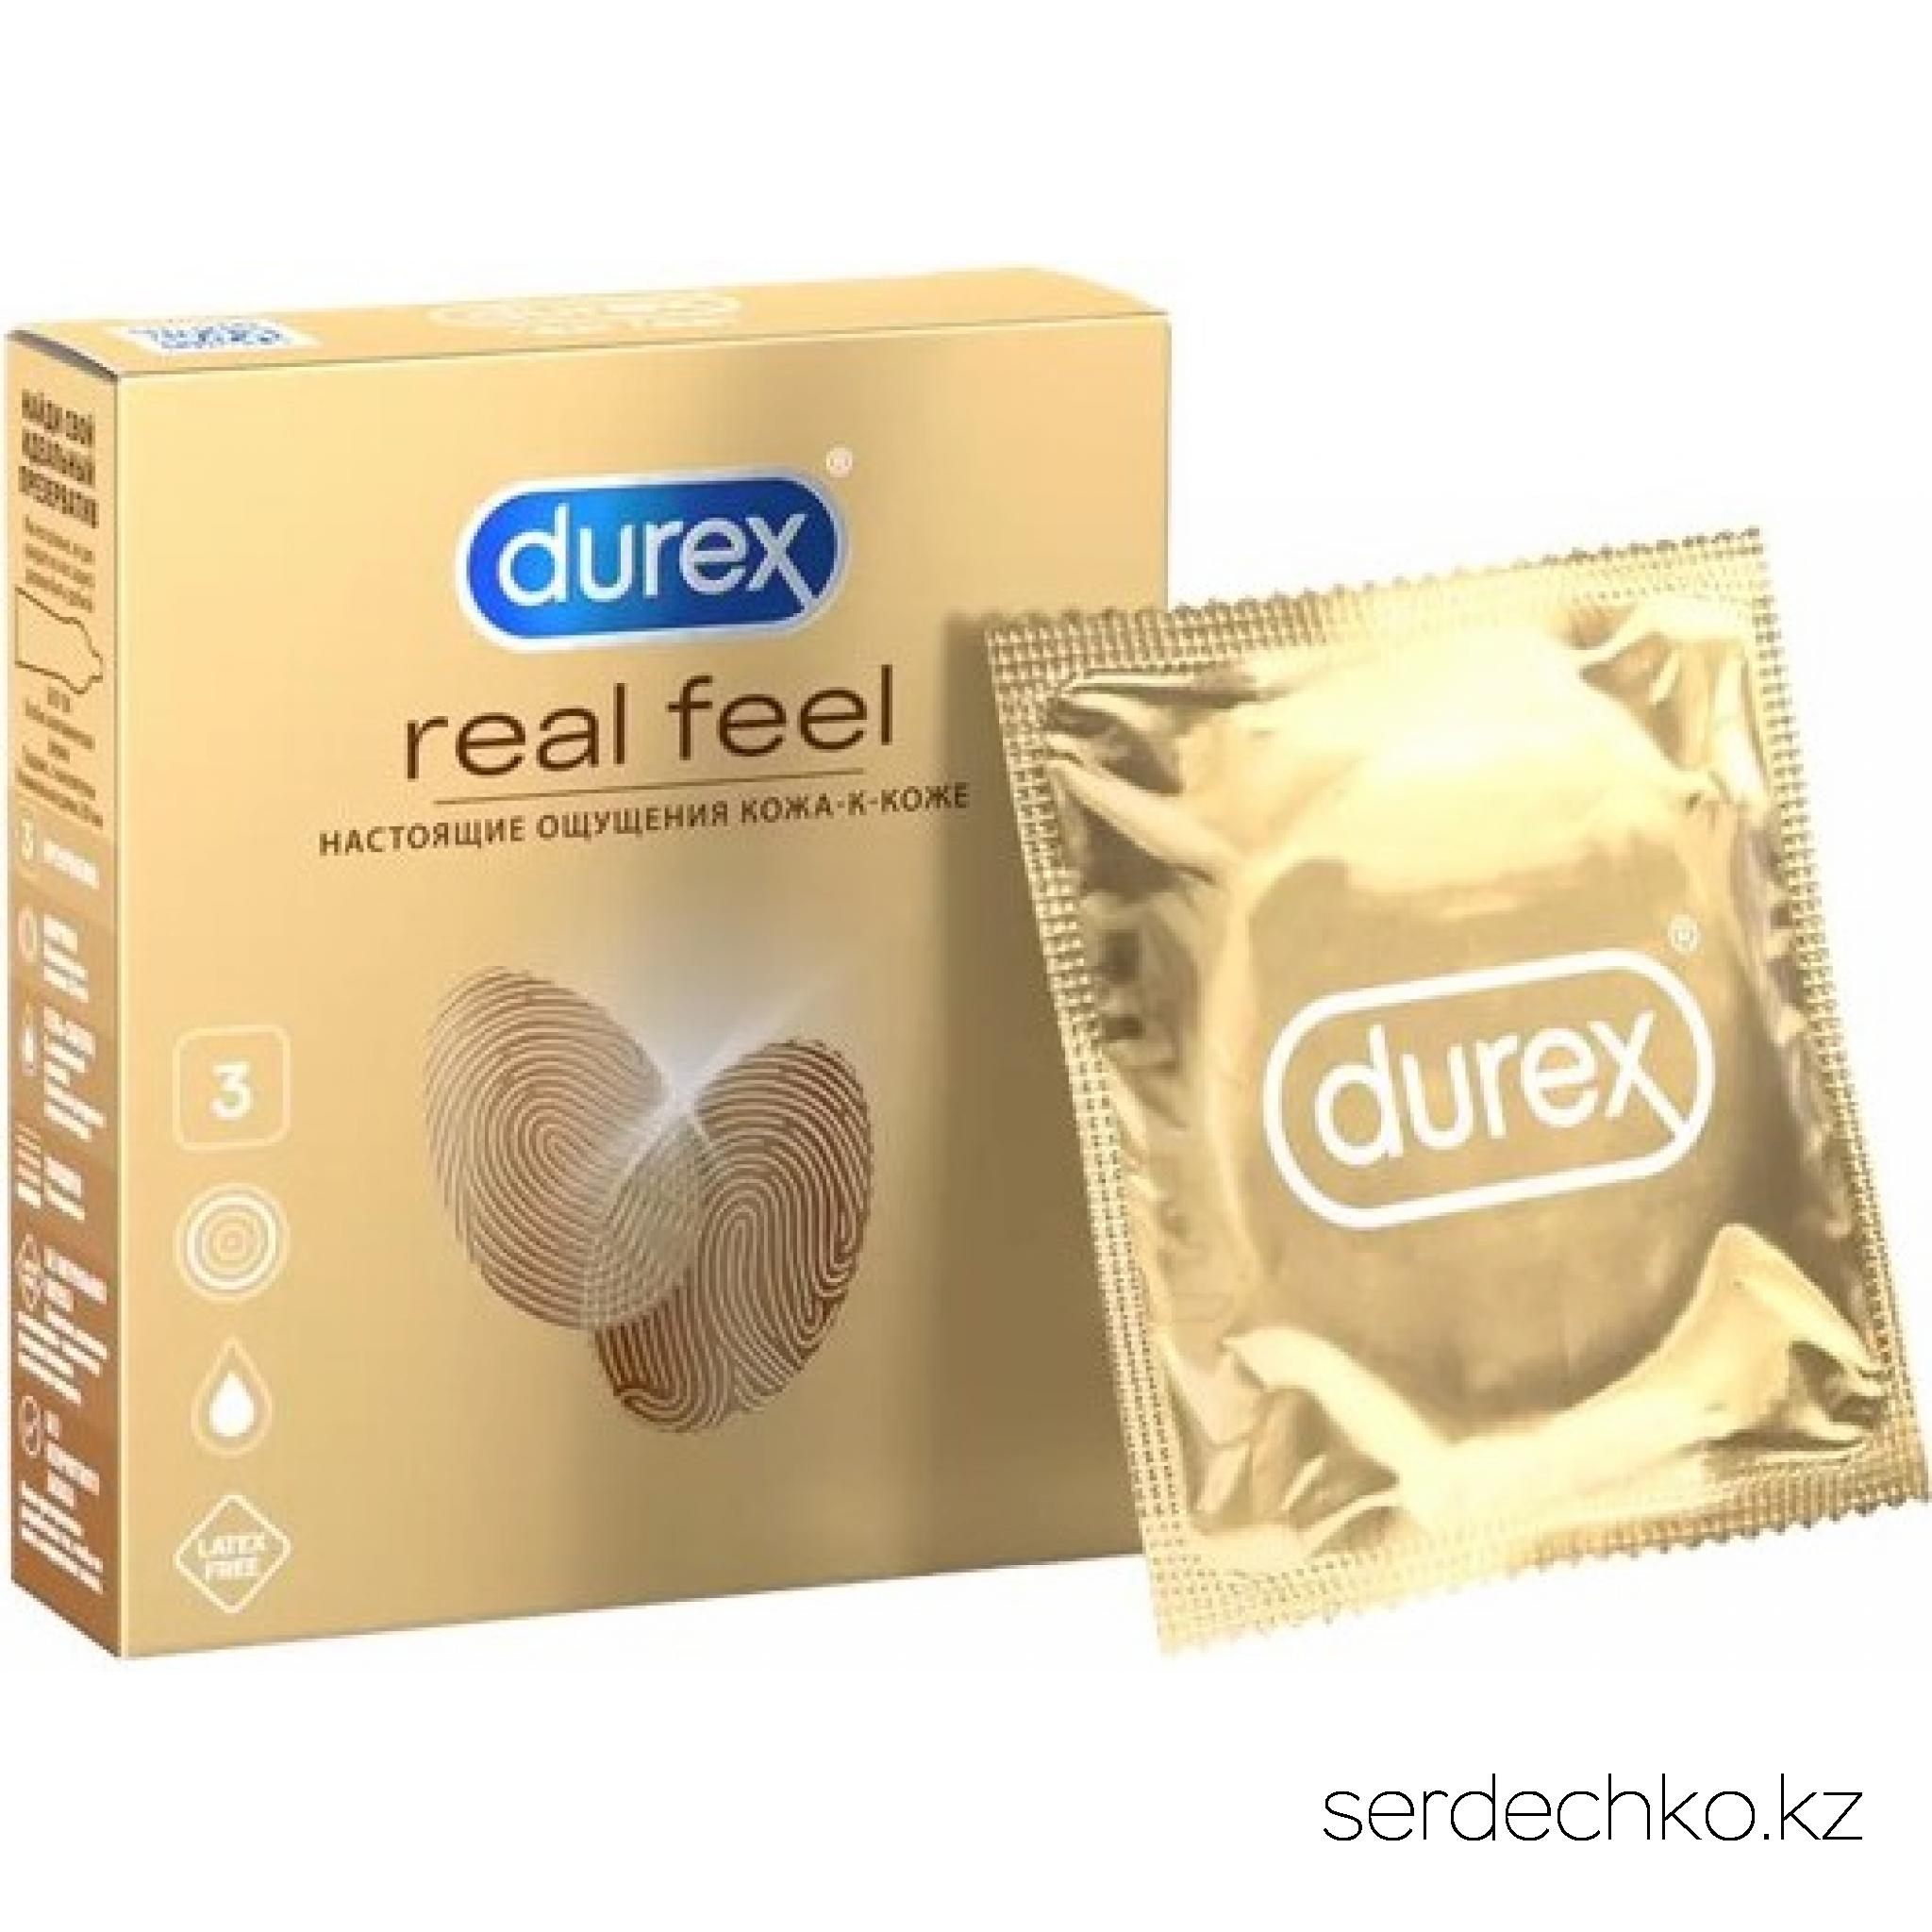 Презервативы №3 DUREX RealFeel (для естественных ощущений), 
	Презервативы Durex Real Feel - это новое поколение презервативов для естественных ощущений с эффектом “кожа к коже”.

	С Durex Real Feel вы можете почувствовать каждое движение, каждое прикосновение так, словно вас ничто не разделяет!

	Гладкие, бесцветные, с накопителем, в смазке.

	Номинальные размеры: длина – 200 мм, ширина – 56 мм.

	Дерматологически тестированы. 100% проверены электроникой.

	 
